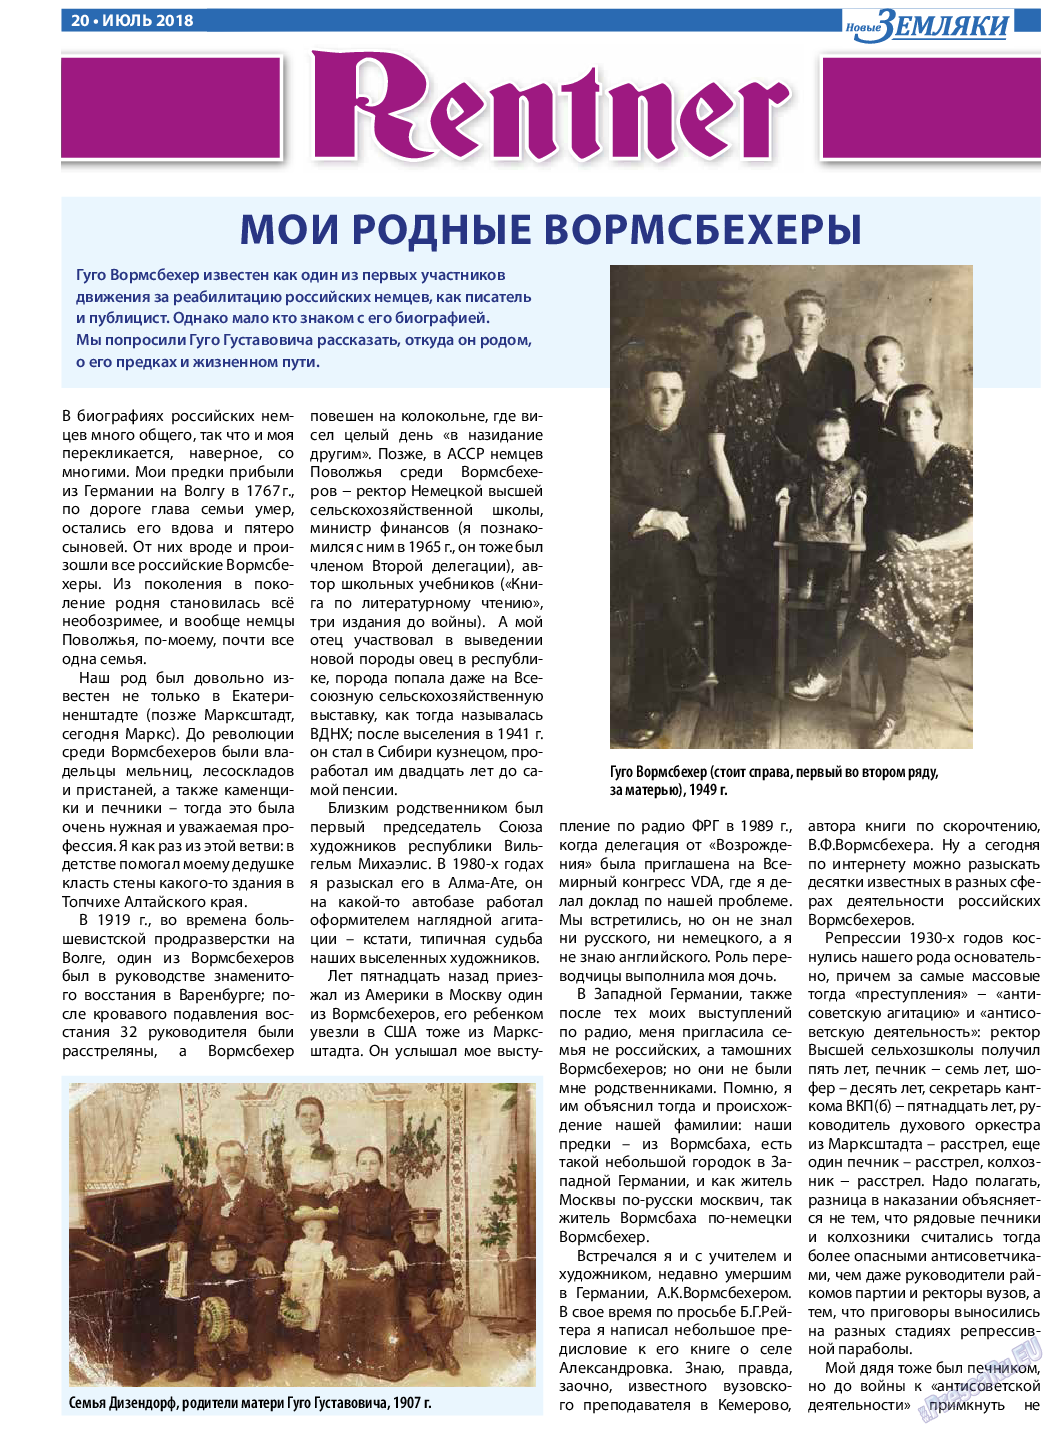 Новые Земляки (газета). 2018 год, номер 7, стр. 20